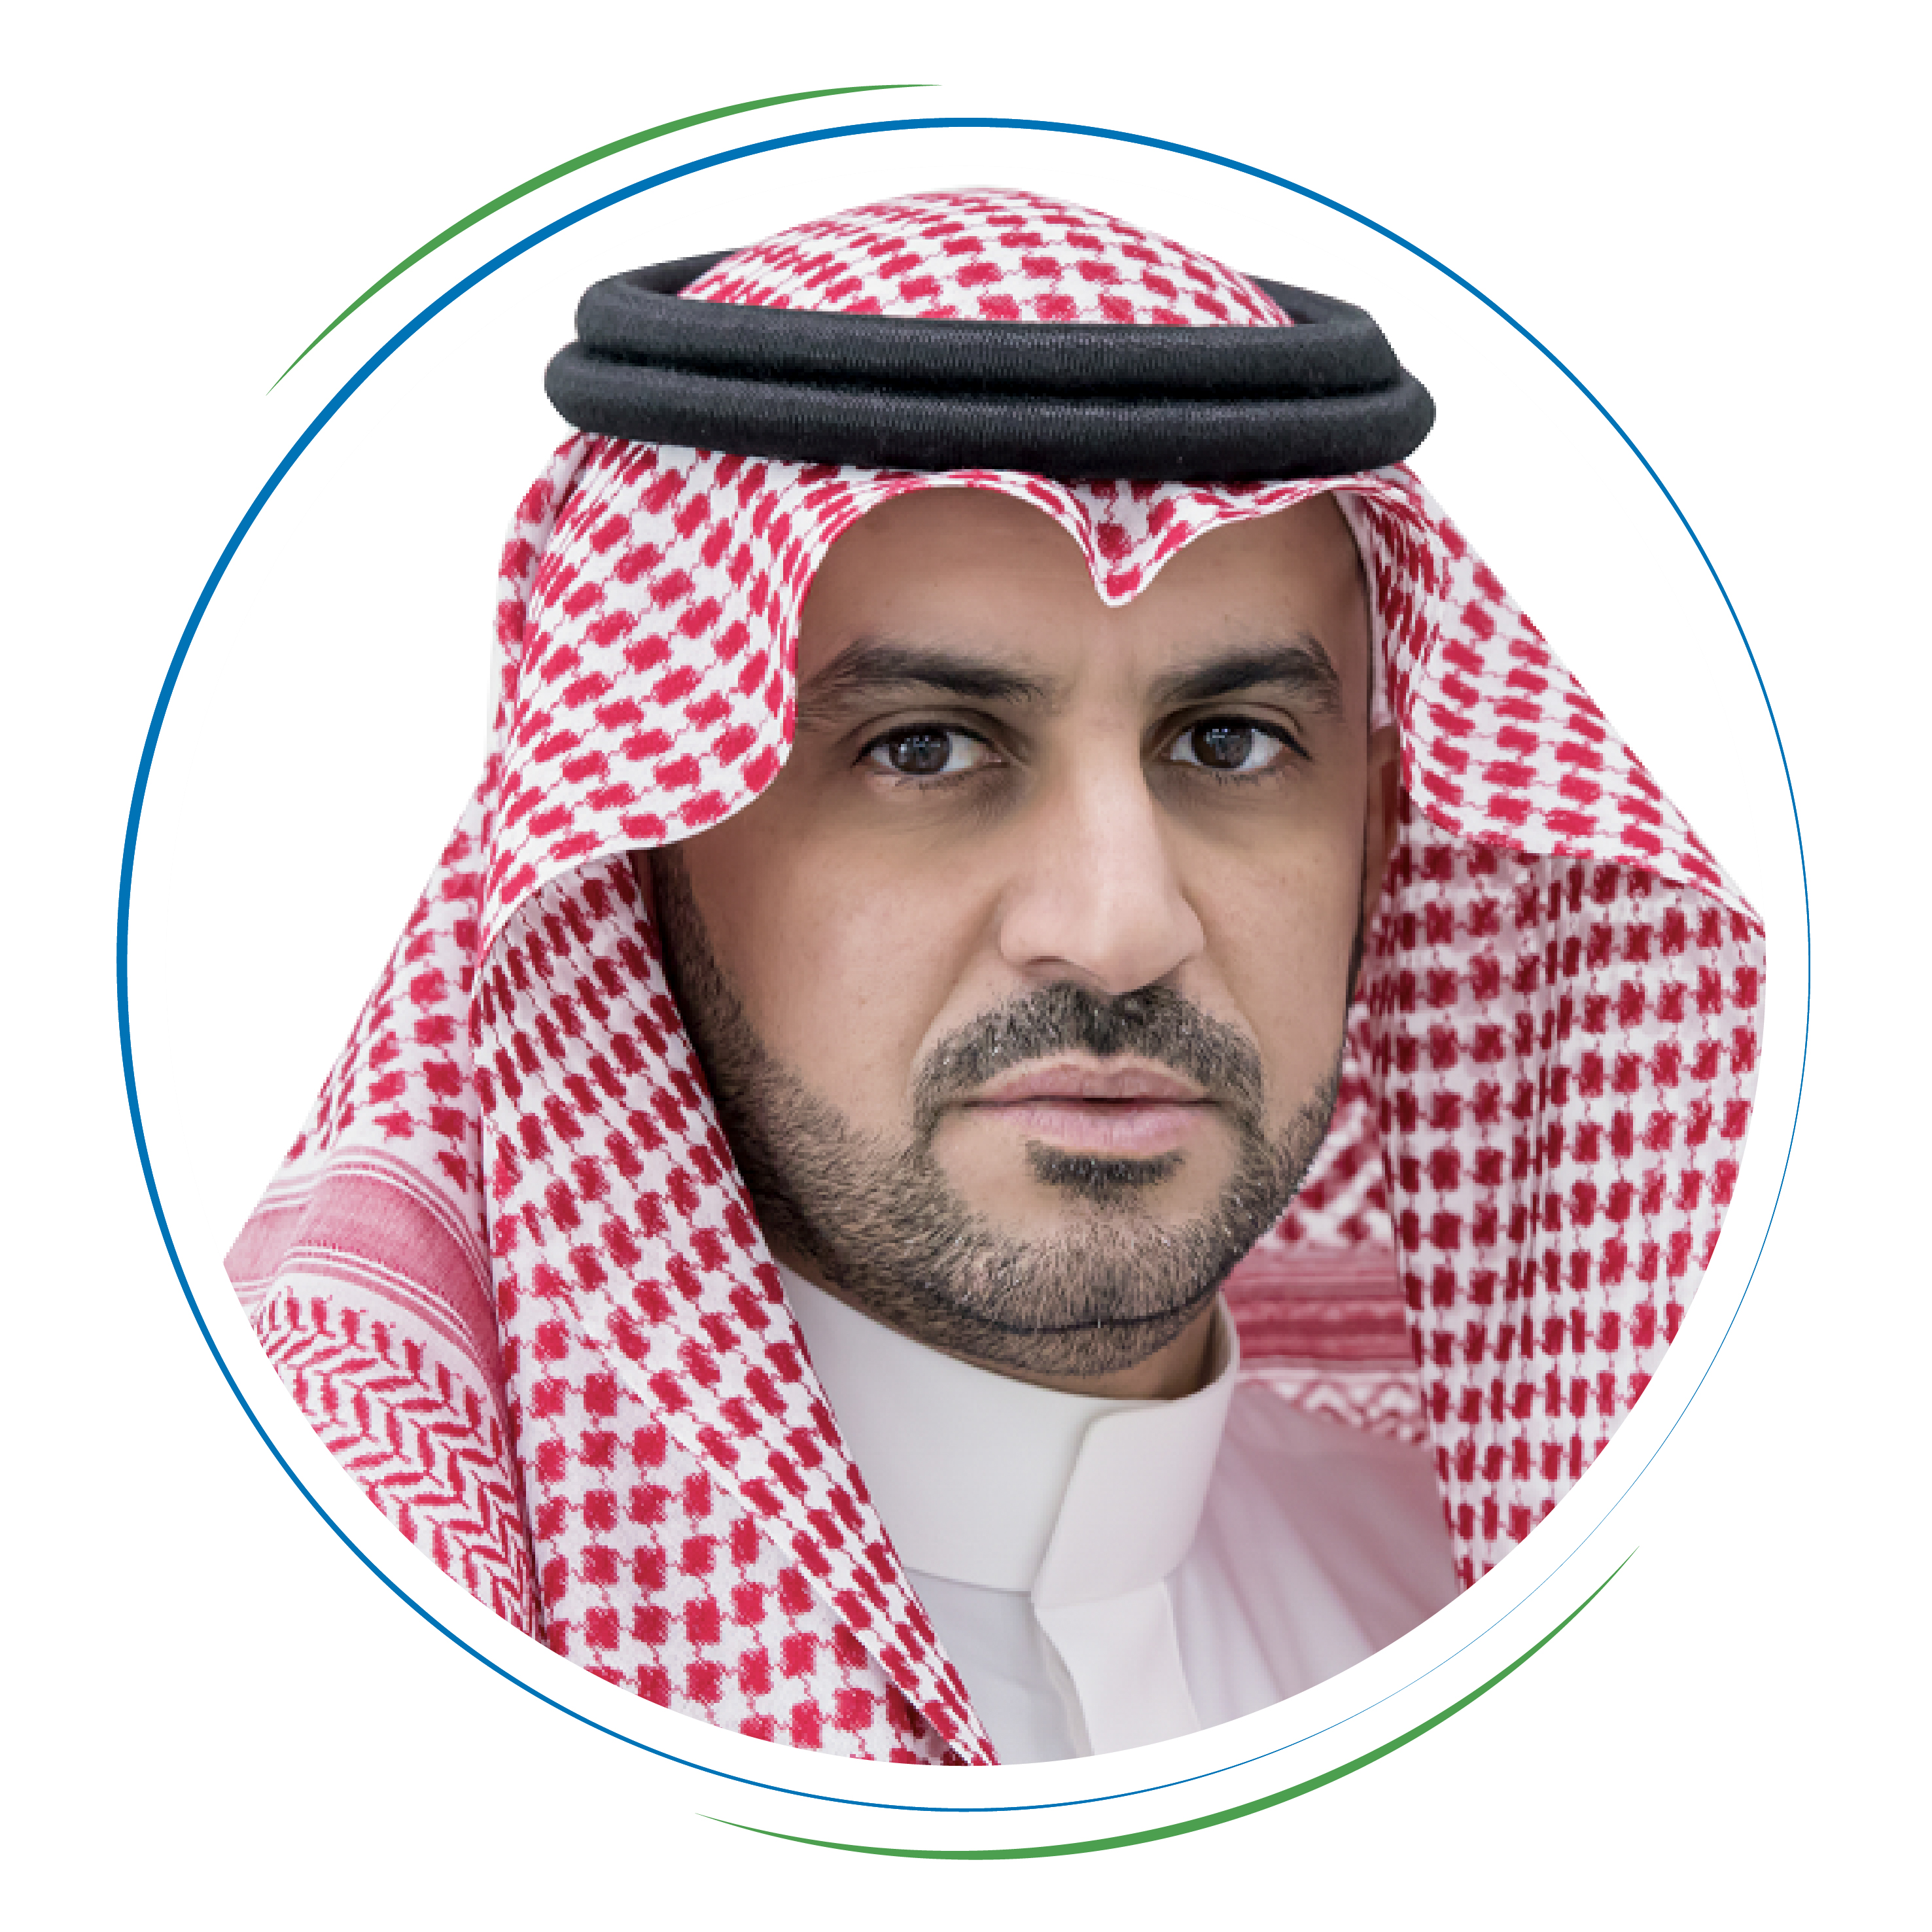 Mr. Abdullah bin Mohammed Al-Sadhan